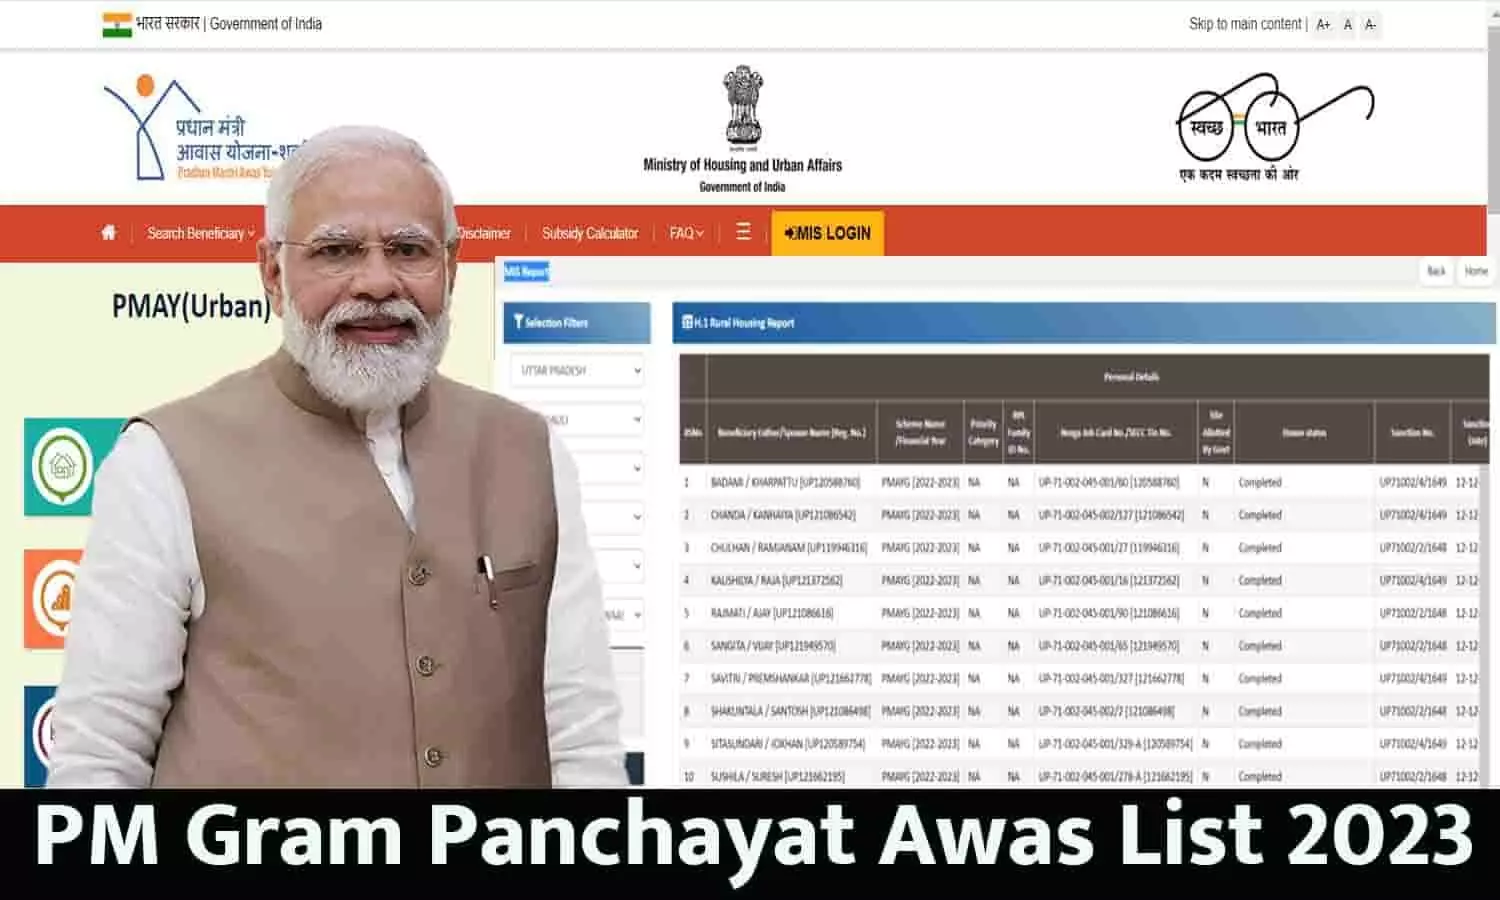 PM Gram Panchayat Awas List 2023